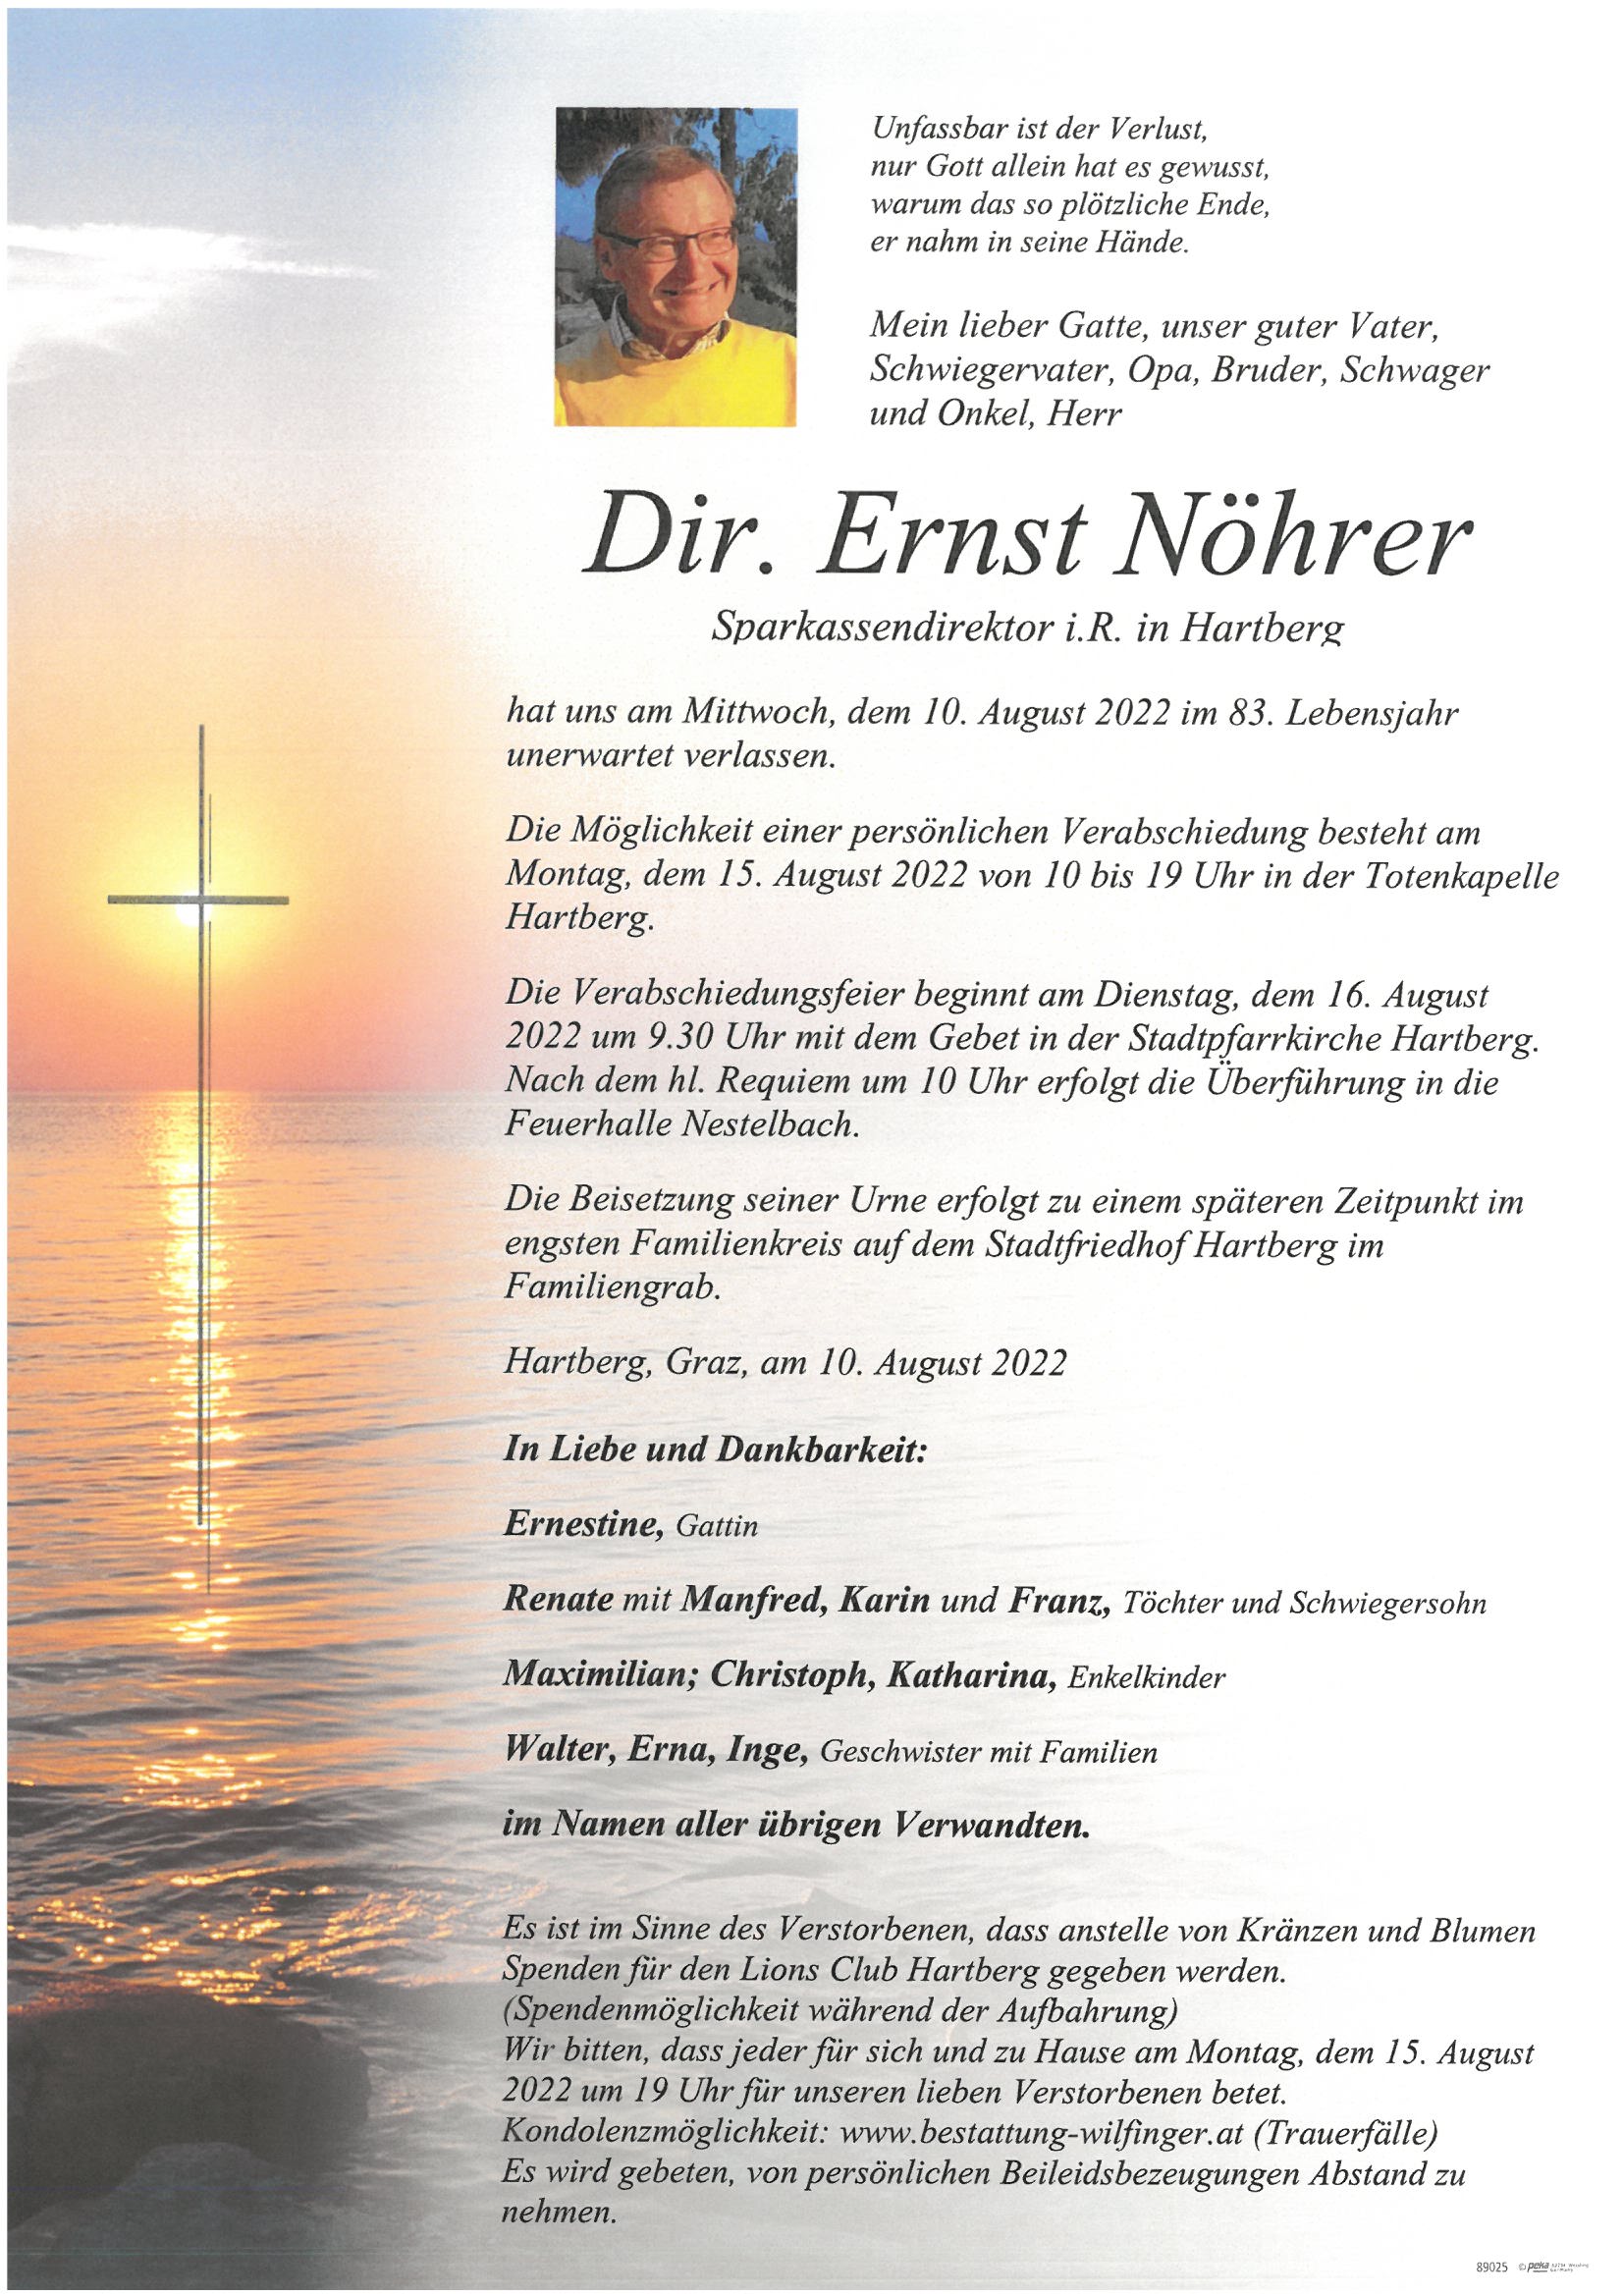 Dir. Ernst Nöhrer, Hartberg